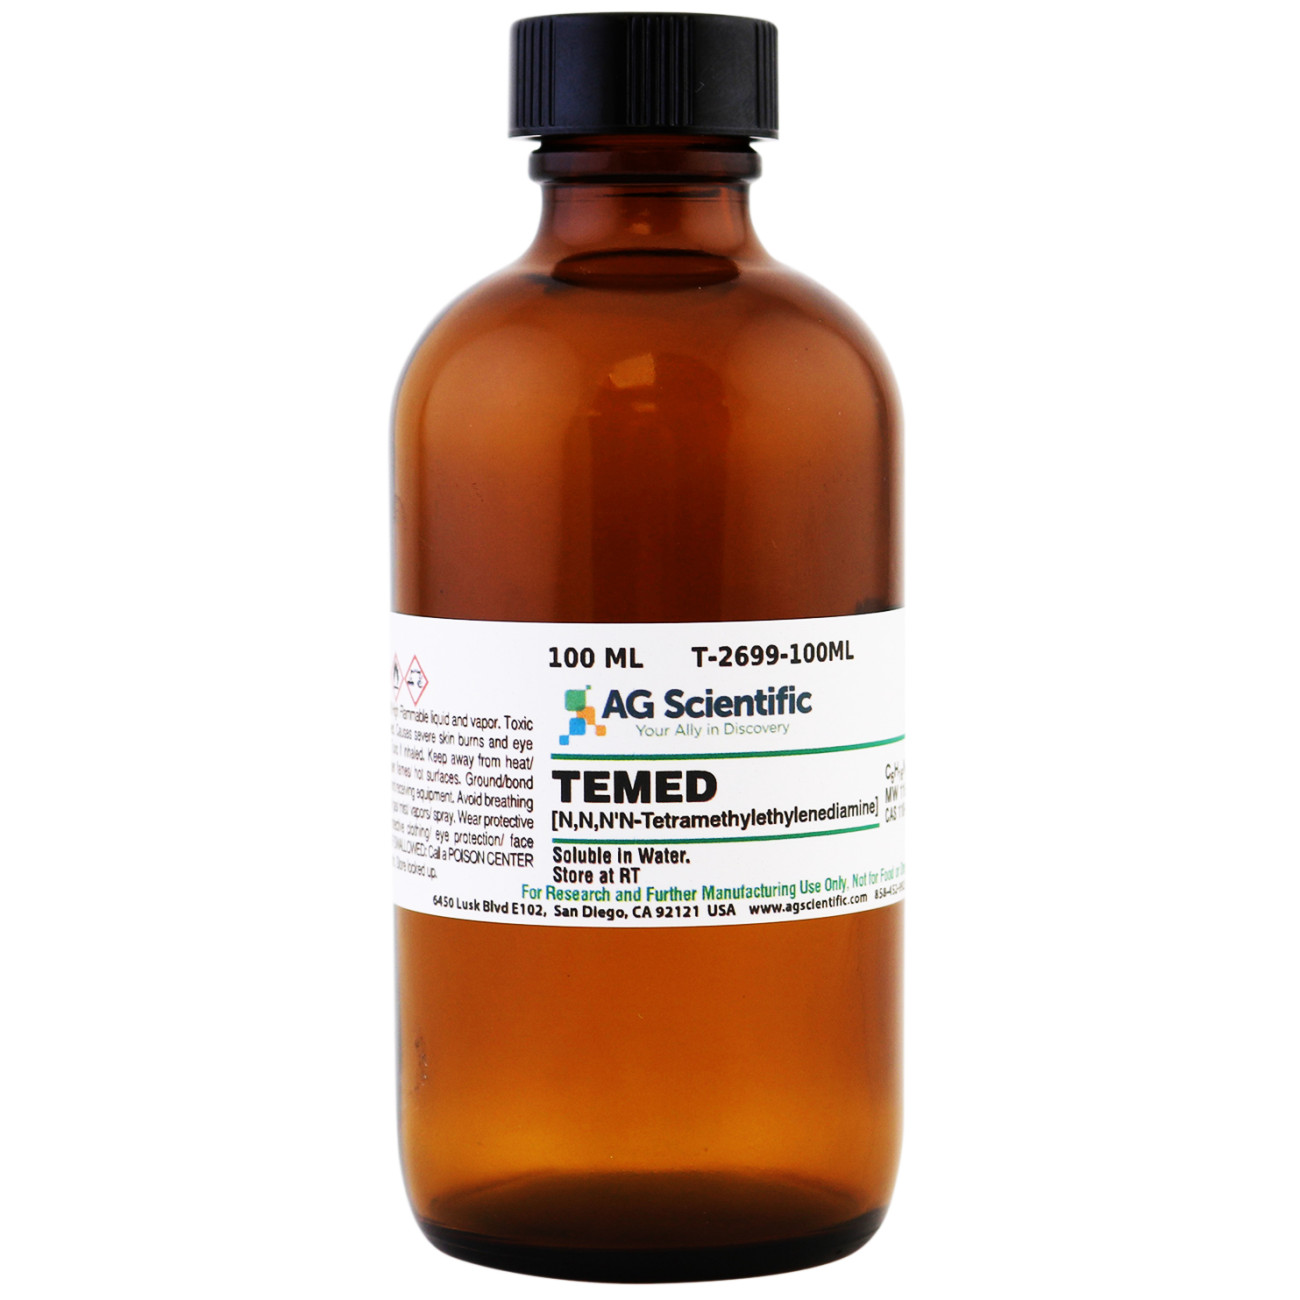 TEMED [N,N,N',N'-Tetramethylethylenediamine], 100 mL